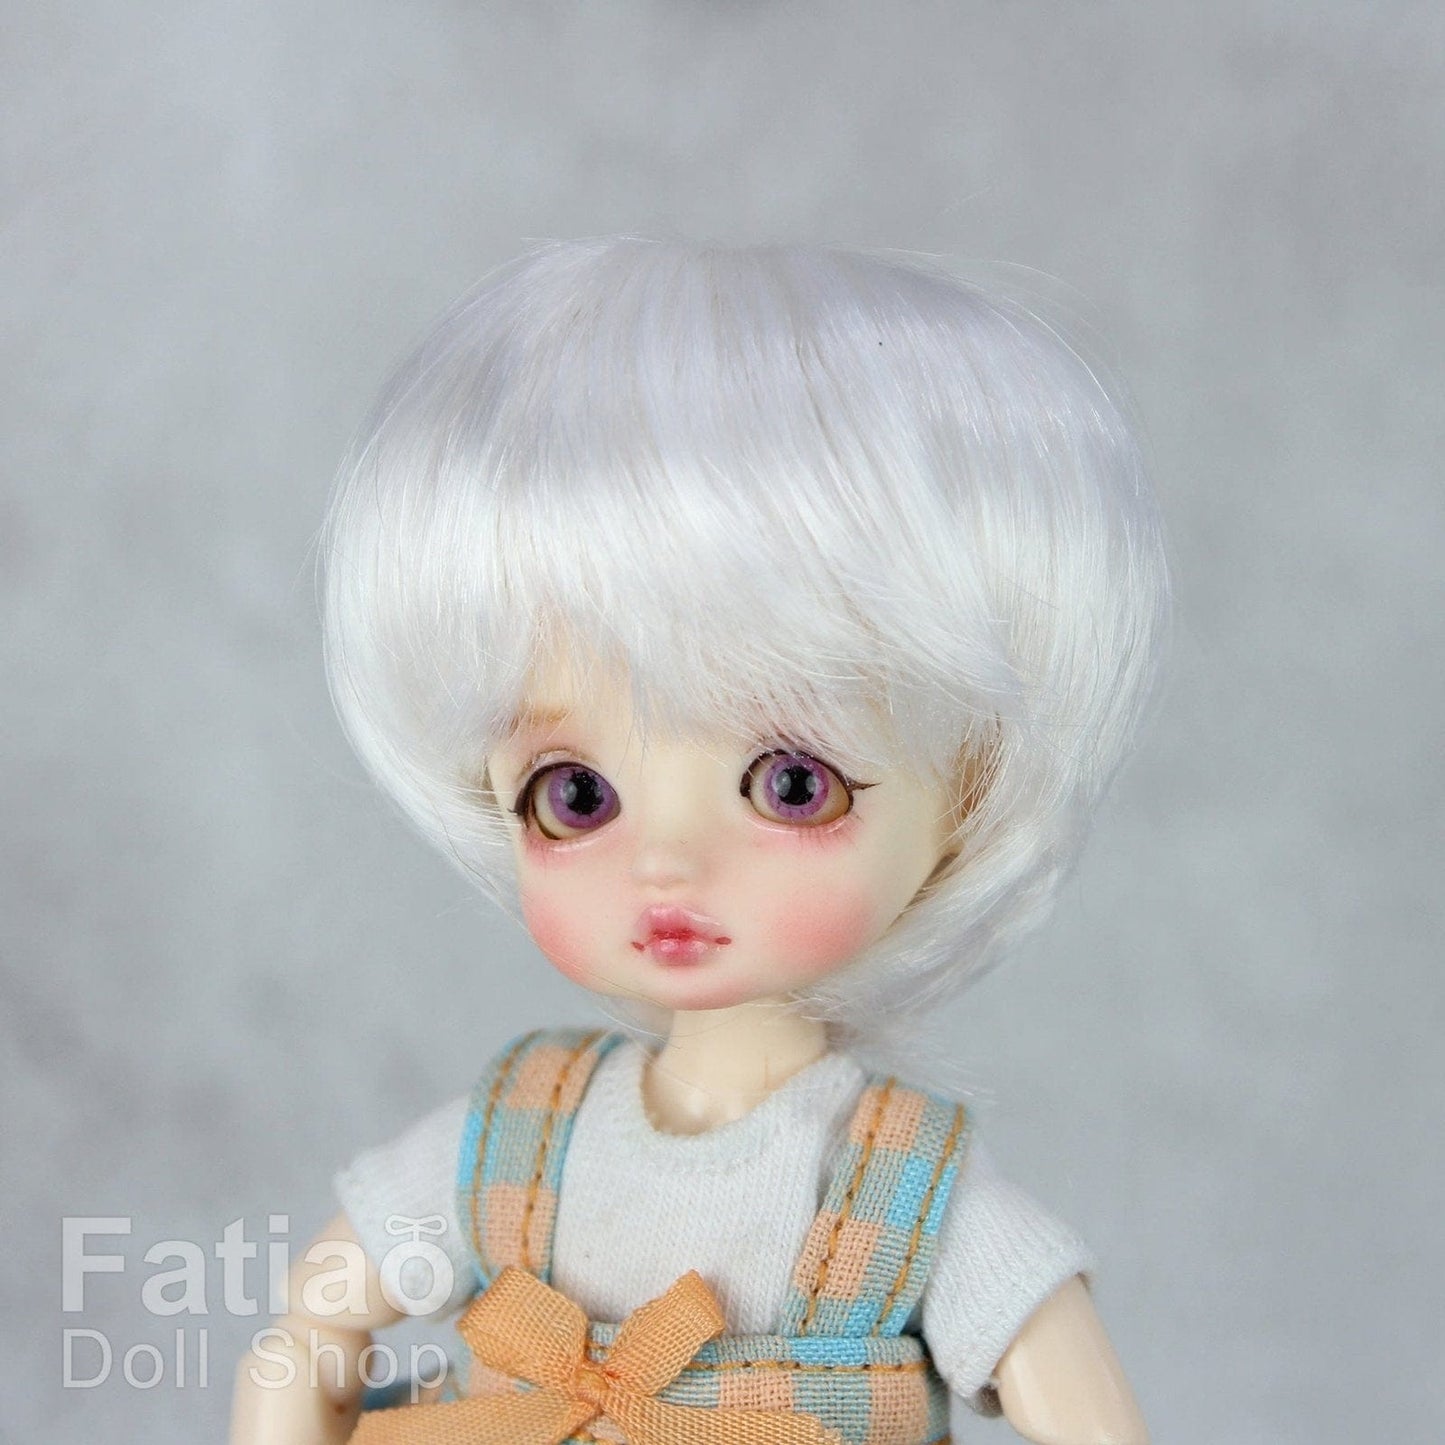 【Fatiao Doll Shop】FWF-053 娃用假髮 多色 / 3-4吋 BJD 12分 pukipuki